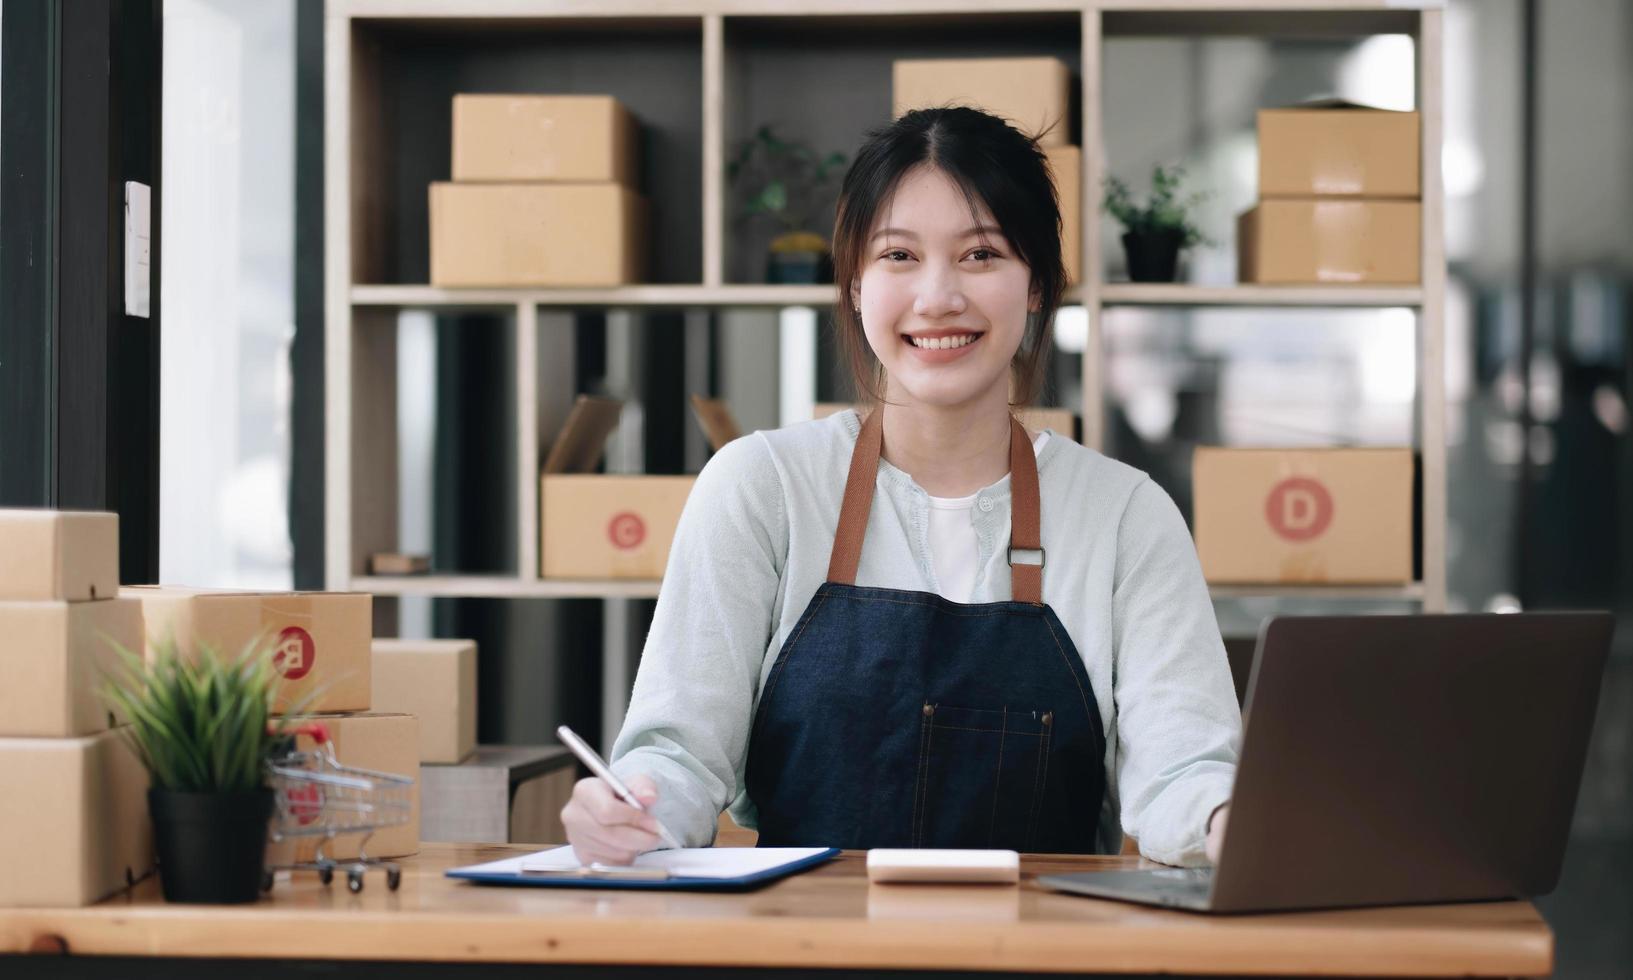 een portret van een jonge aziatische vrouw e-commerce werknemer zittend in het kantoor vol pakketten op de achtergrond notitie van bestellingen en een rekenmachine, voor mkb-bedrijven e-commerce en bezorging bedrijf. foto